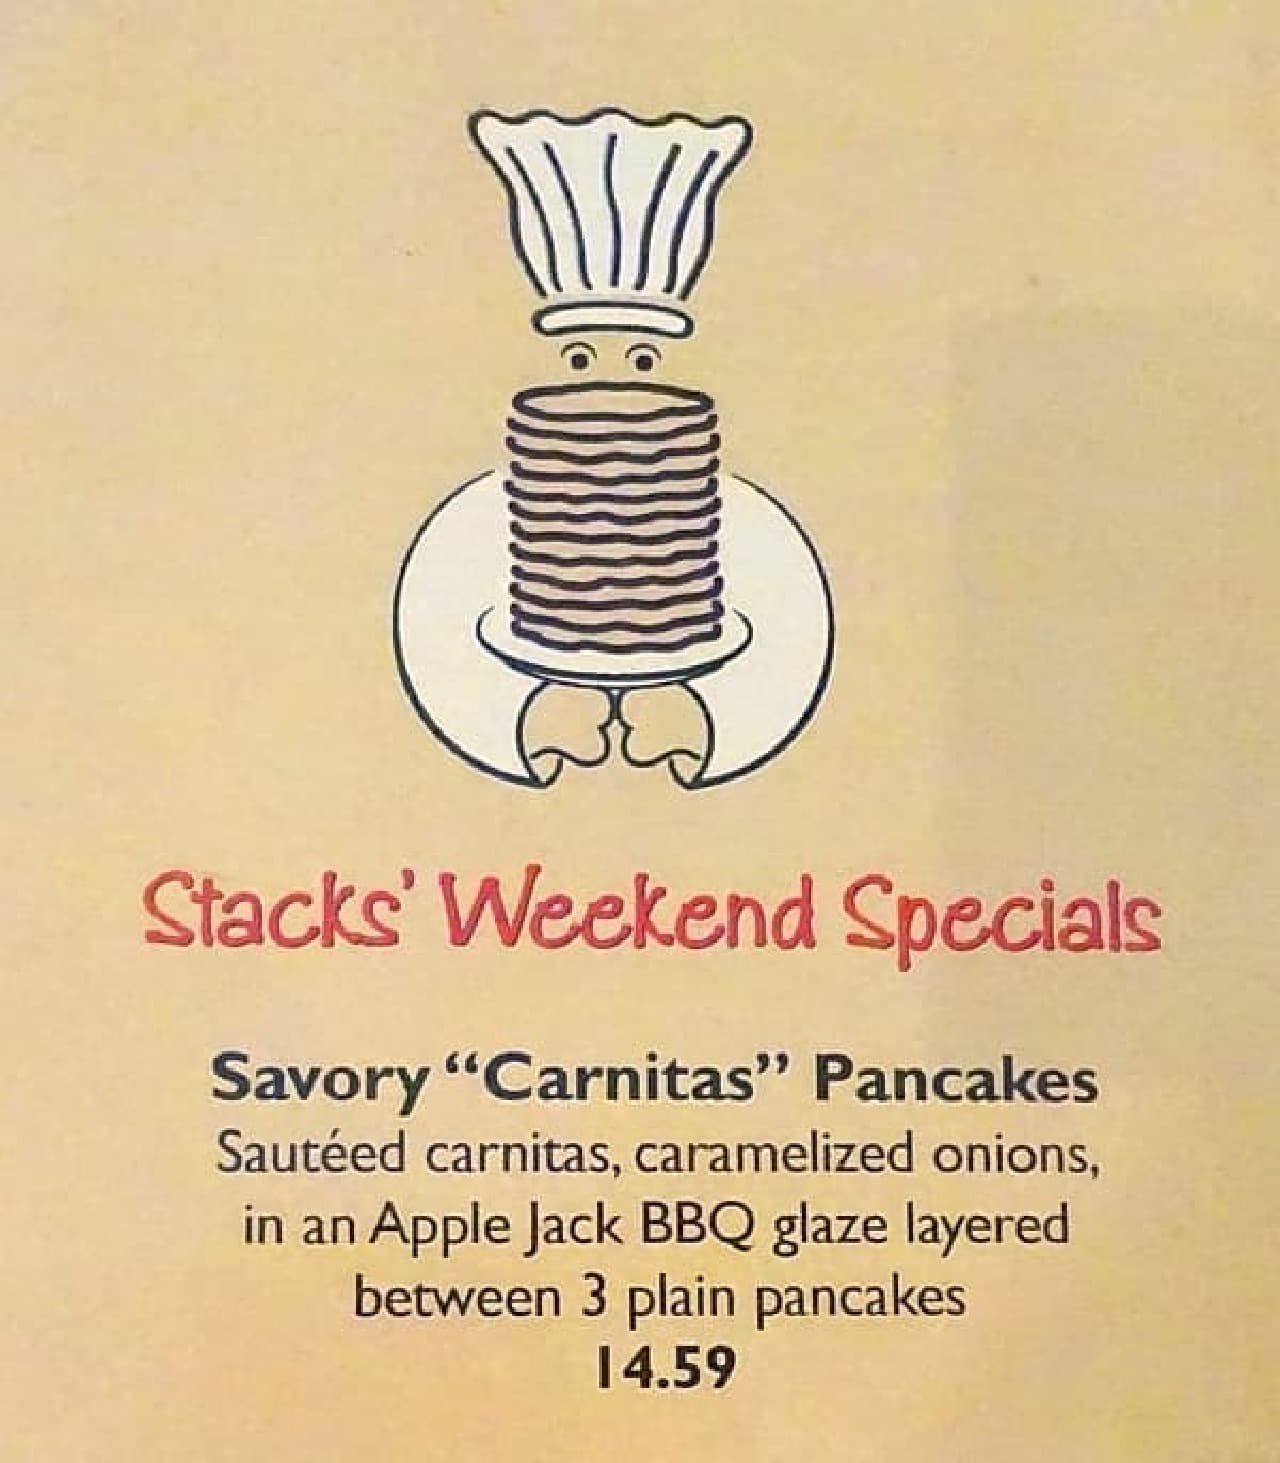 「Savory Carnitas Pancake」はこの日のおススメメニュー　　日本と違いメニューに写真が無いので　　どんな料理かはでてくるまでわかりません